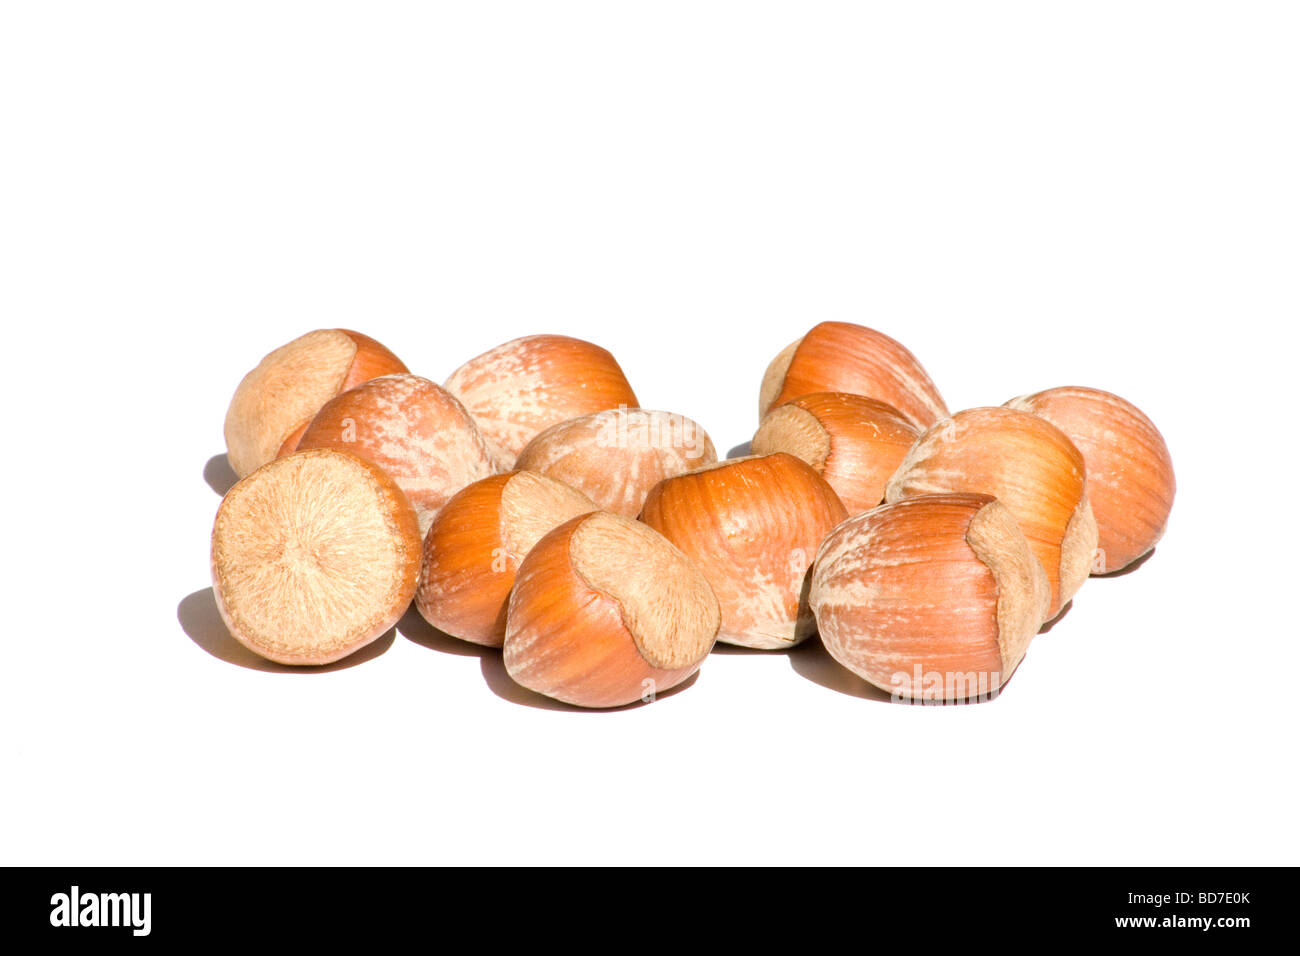 Close-up of hazelnuts on white background Stock Photo